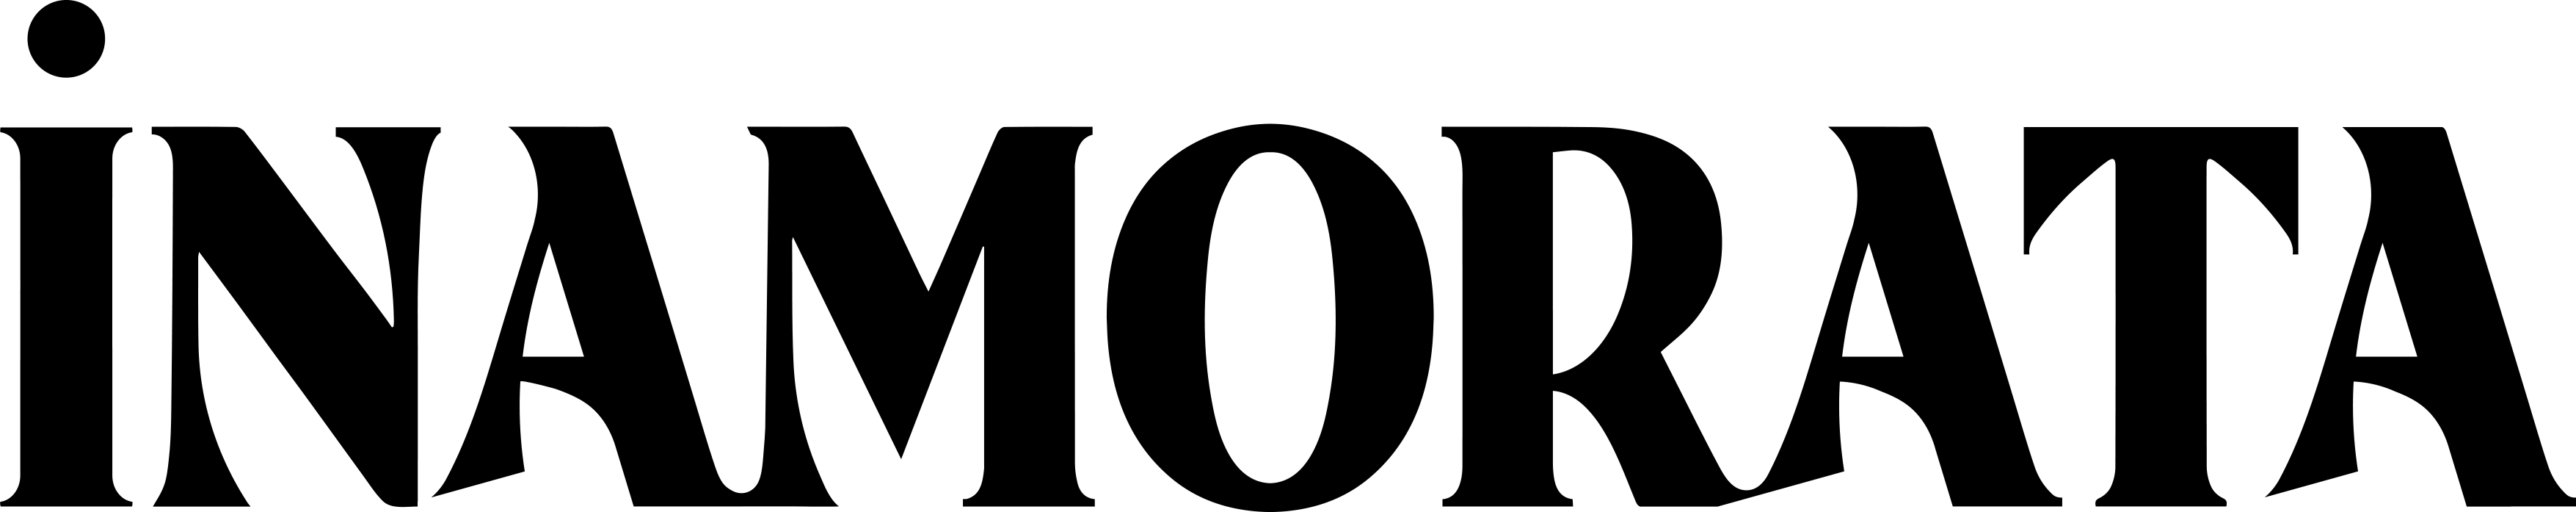 Inamorata Brand Logo PNG image